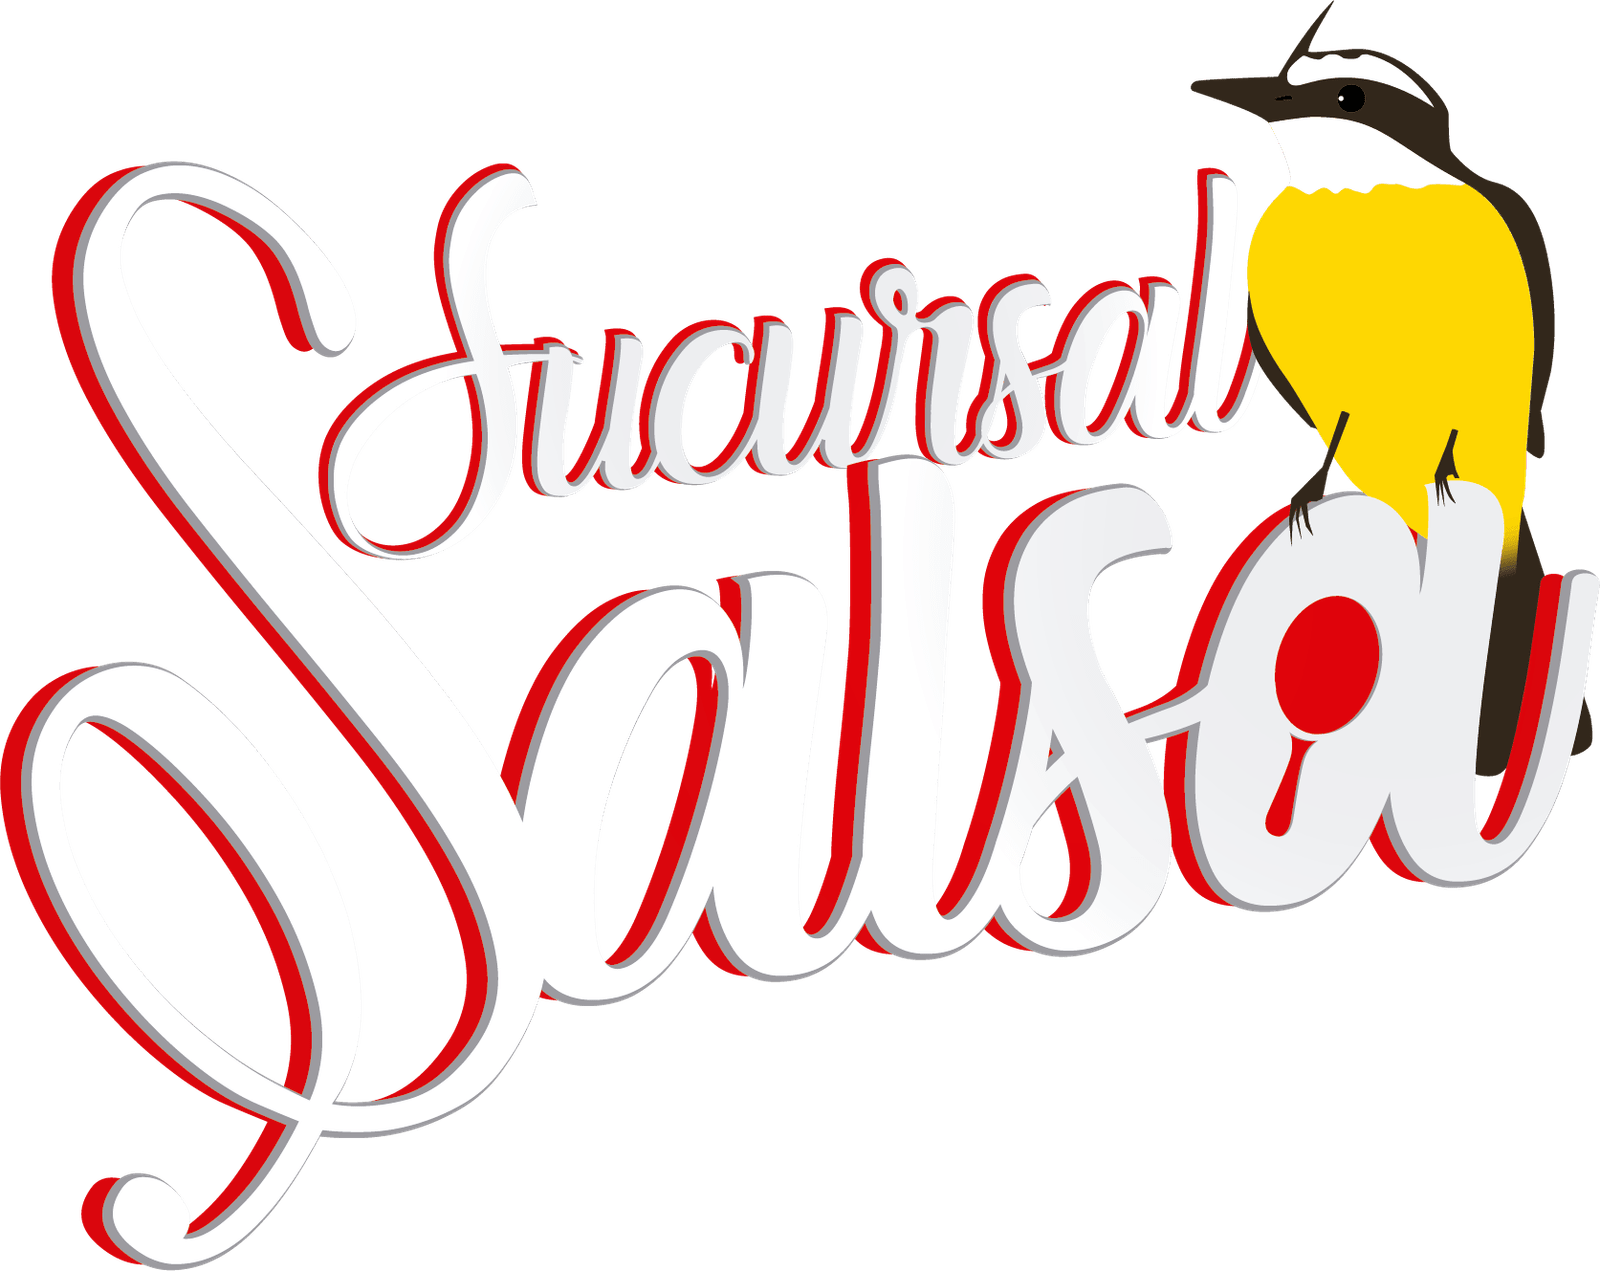 Sucursal Salsa